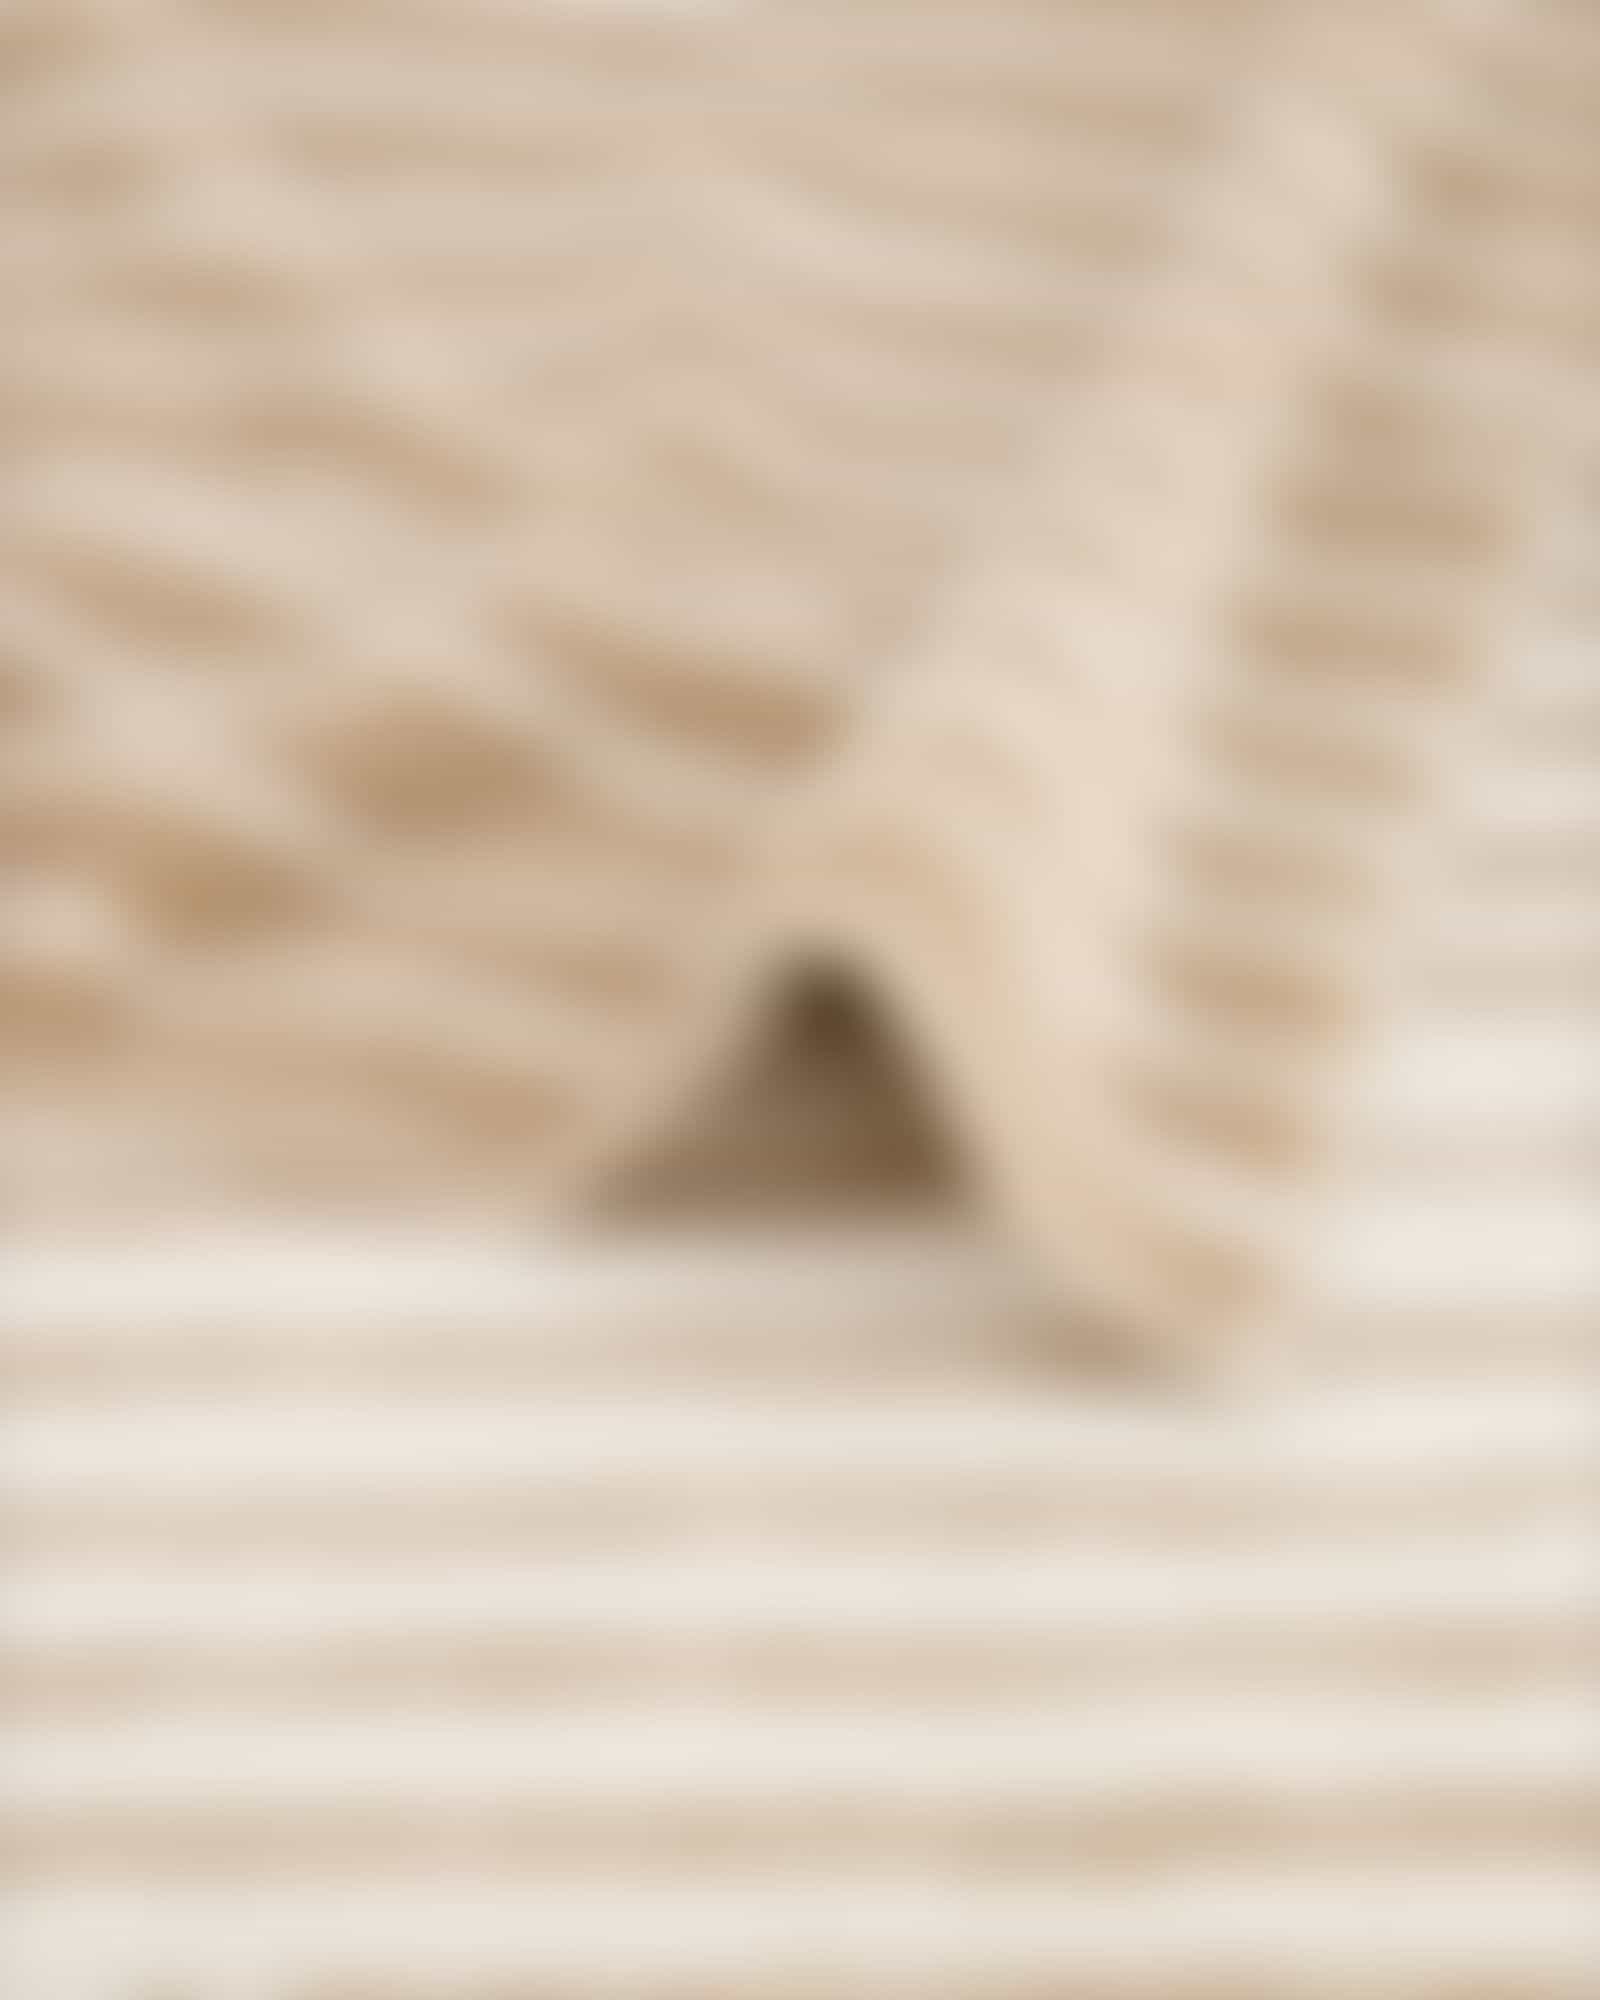 Cawö Handtücher Loft Lines 6225 - Farbe: natur - 33 - Handtuch 50x100 cm